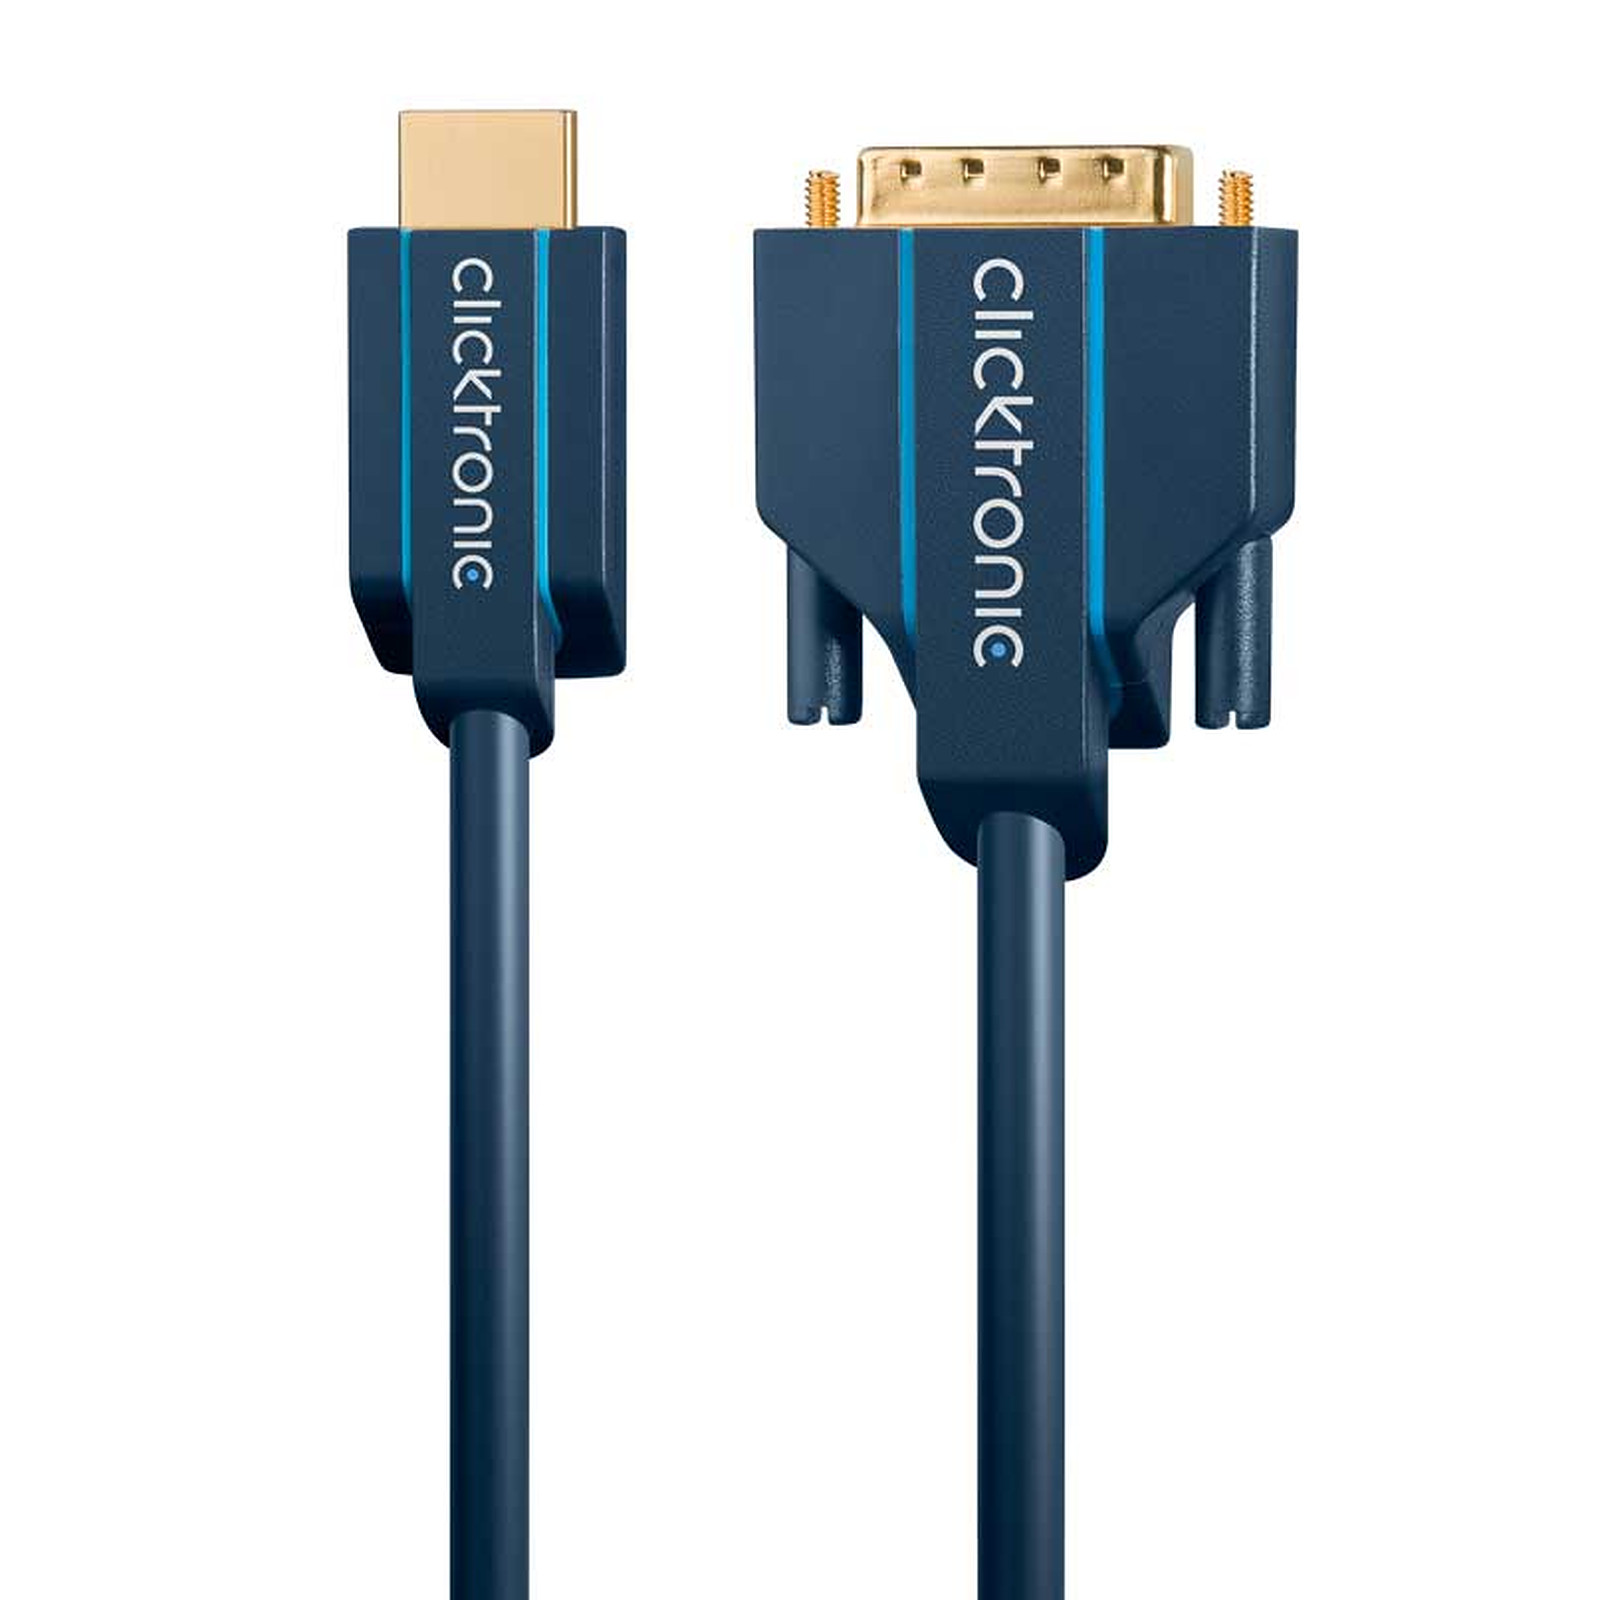 Clicktronic cable HDMI / DVI (3 mètres) - HDMI Clicktronic